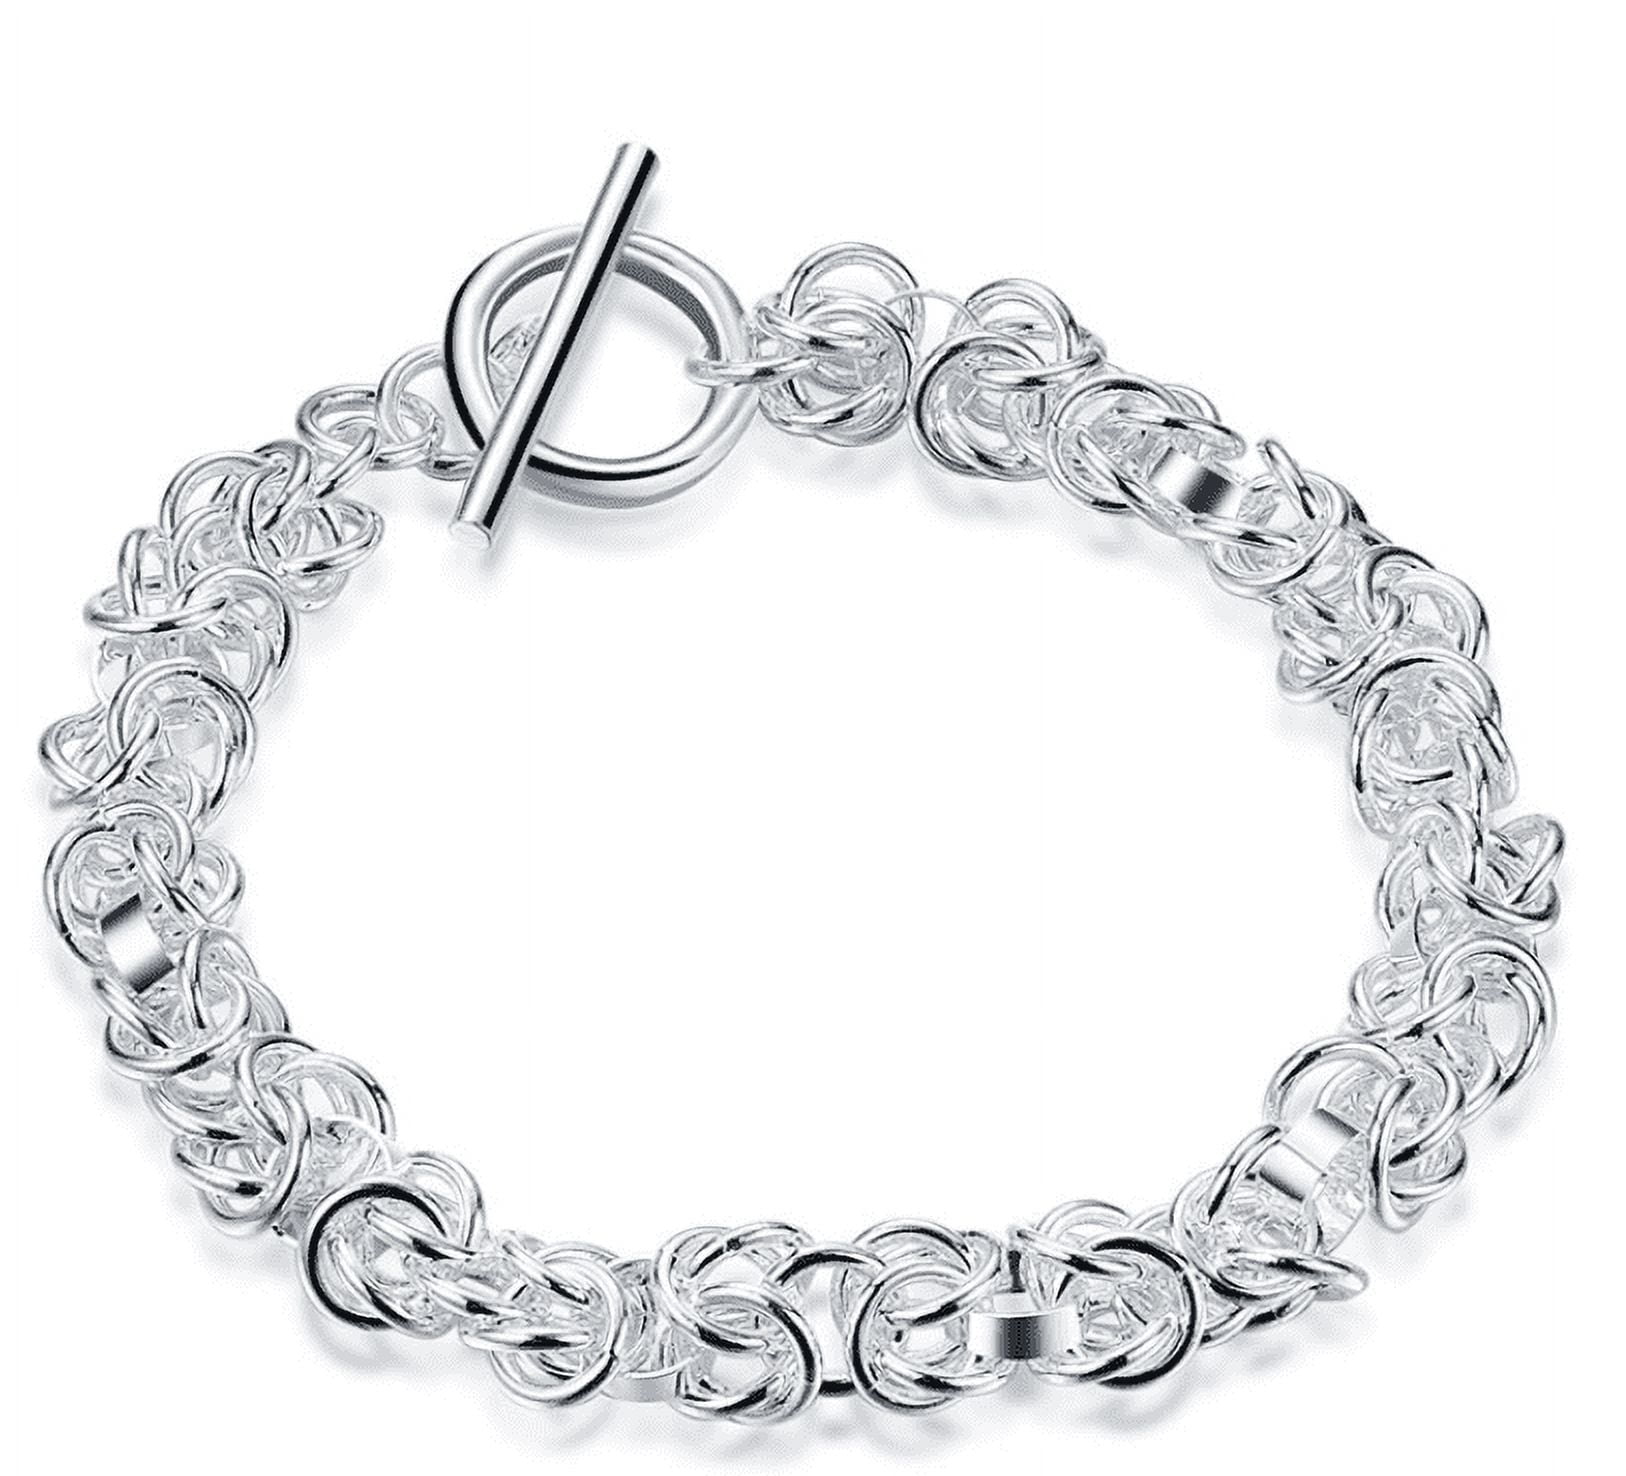  LGEGE Silver Bracelet Tool Jewelry Helper- Bracelet